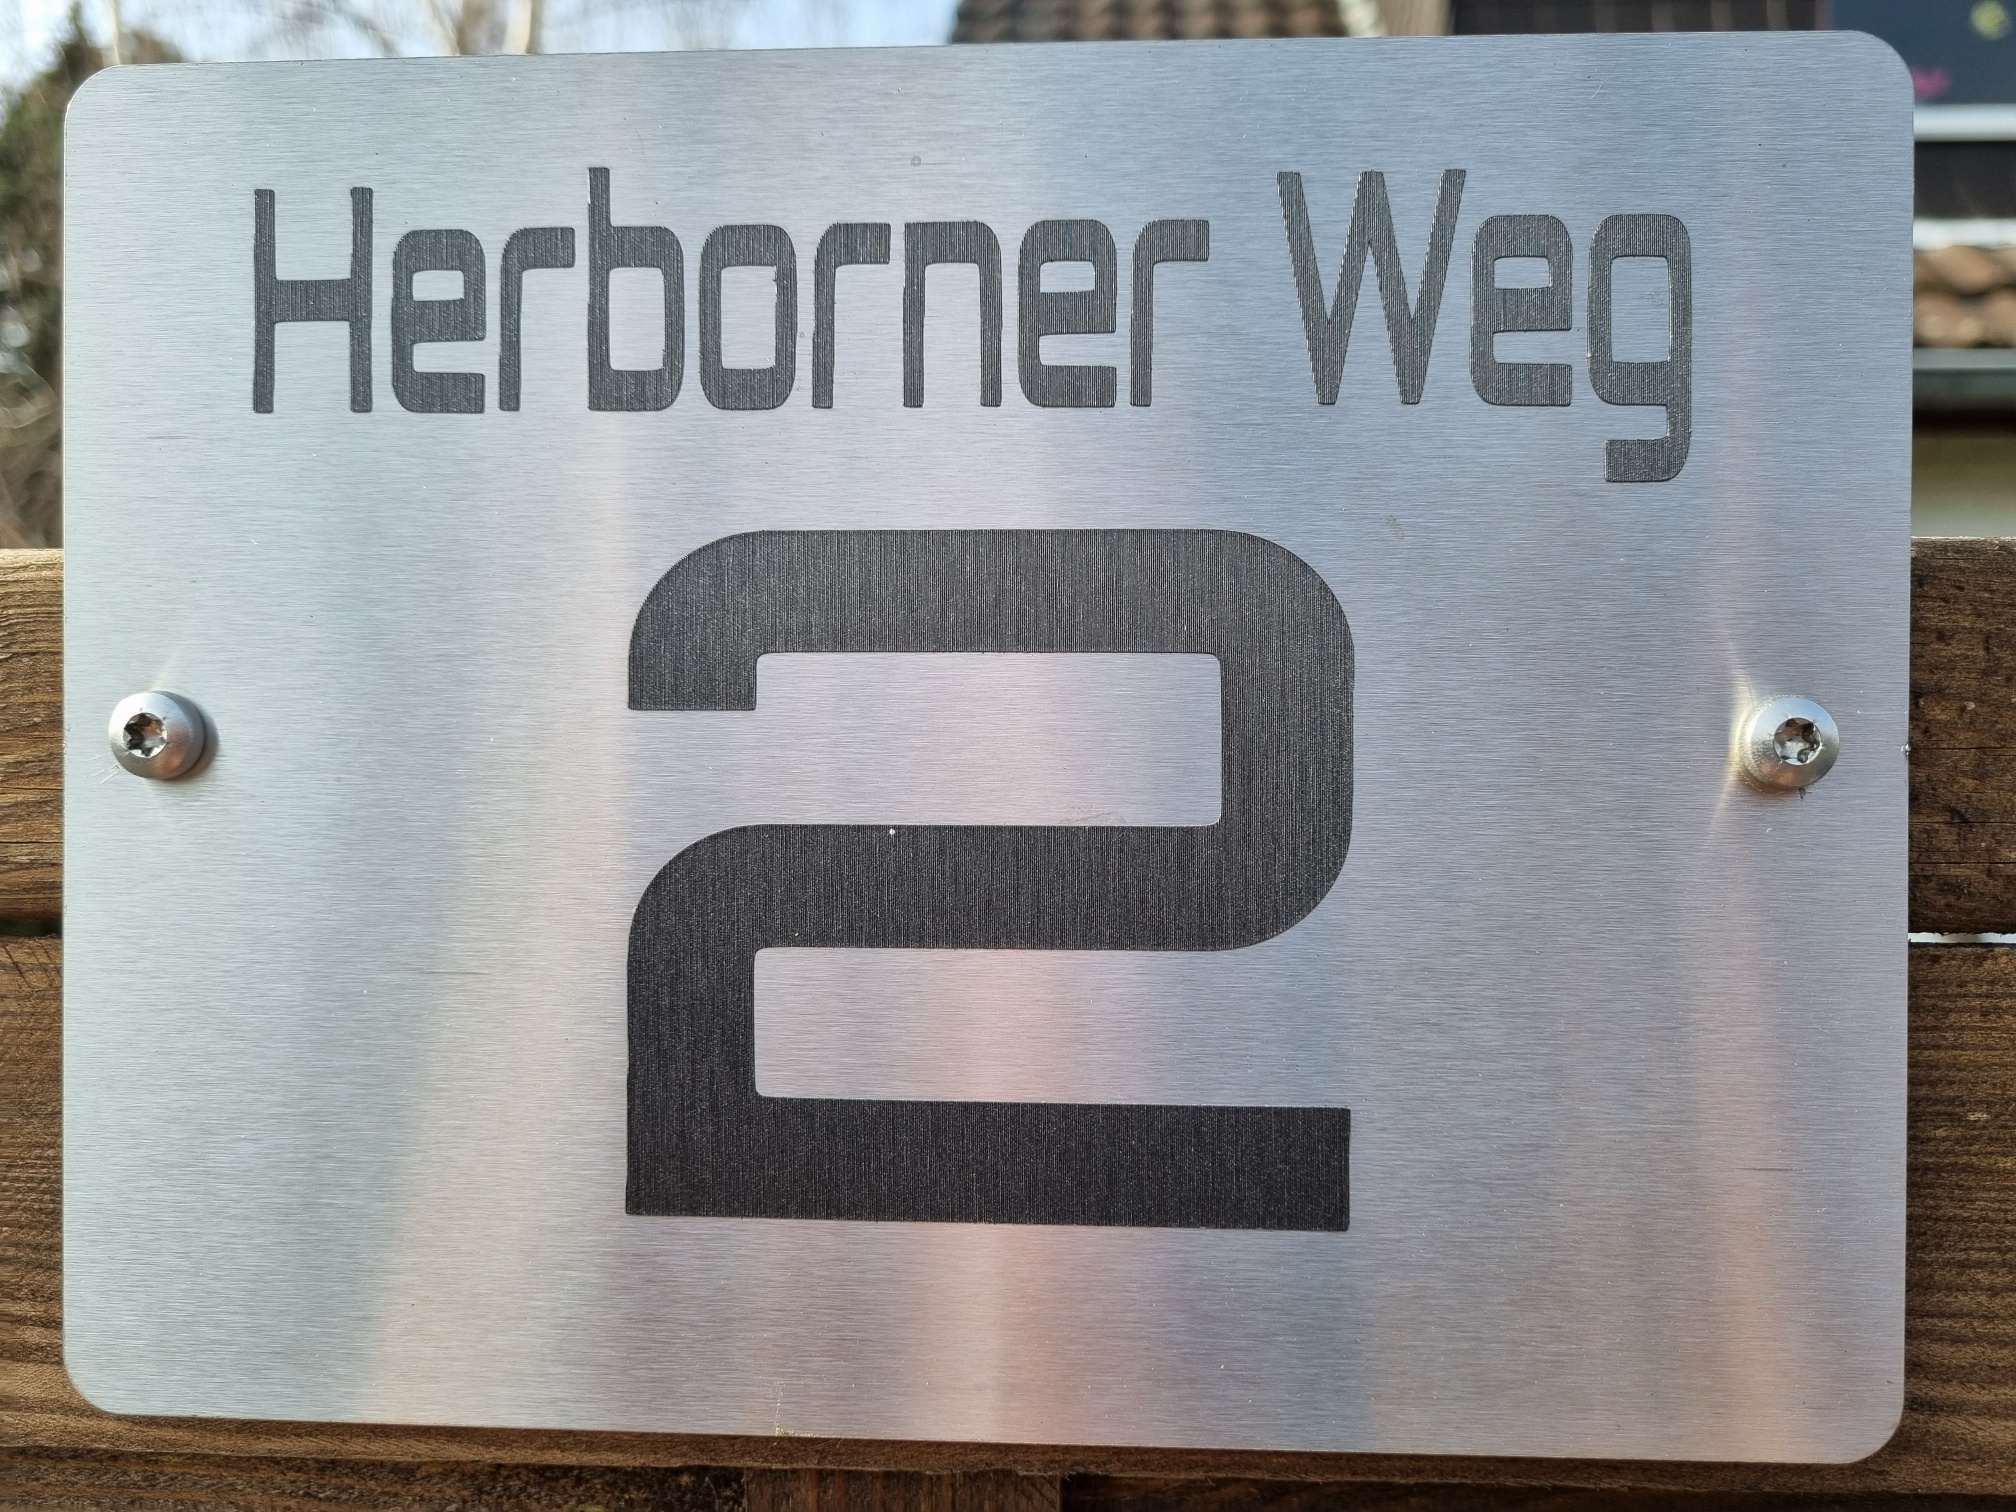 Anschrift: Herborner Weg 2, 40229 Düsseldorf